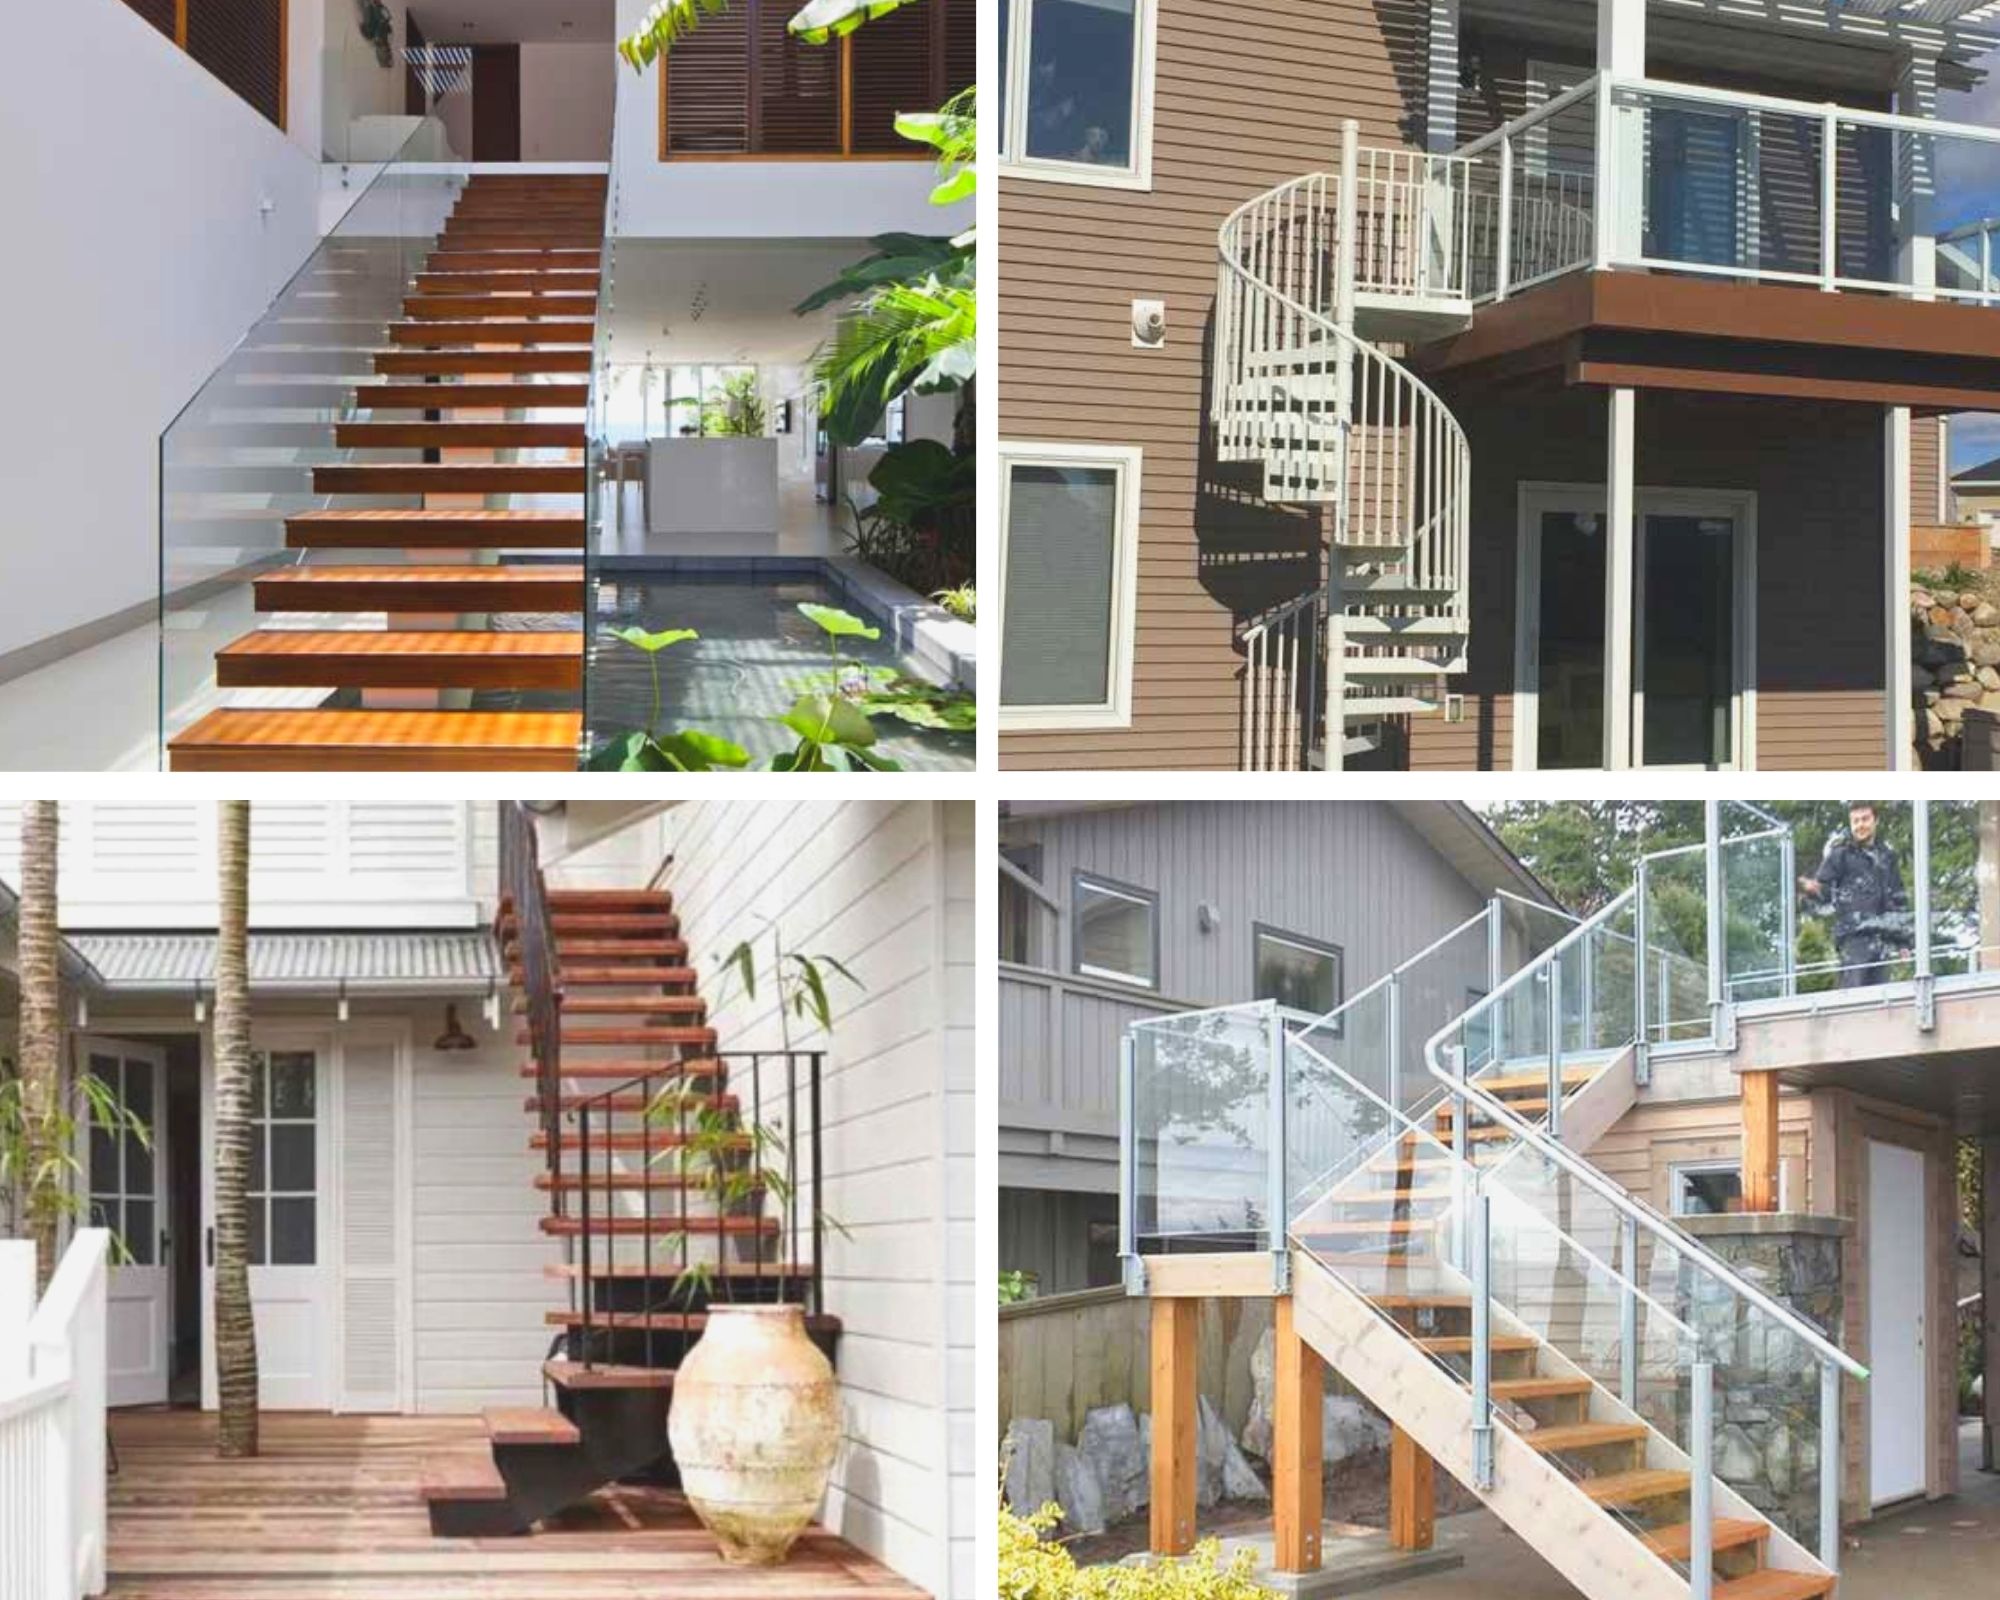 Thiết kế cầu thang ngoài trời đẹp đem lại cho ngôi nhà của bạn một diện mạo mới lạ và độc đáo hơn. Với những mẫu thiết kế đẹp mắt, cầu thang ngoài trời sẽ trở thành một điểm nhấn cho ngôi nhà của bạn. Xem ngay hình ảnh mới nhất để có thể tìm ra mẫu cầu thang đẹp nhất cho không gian sống của bạn.